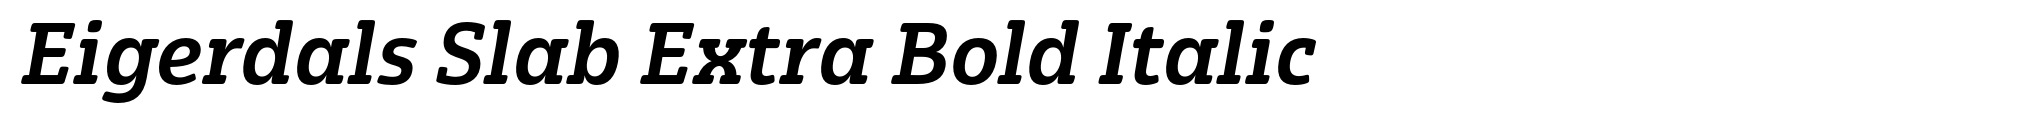 Eigerdals Slab Extra Bold Italic image